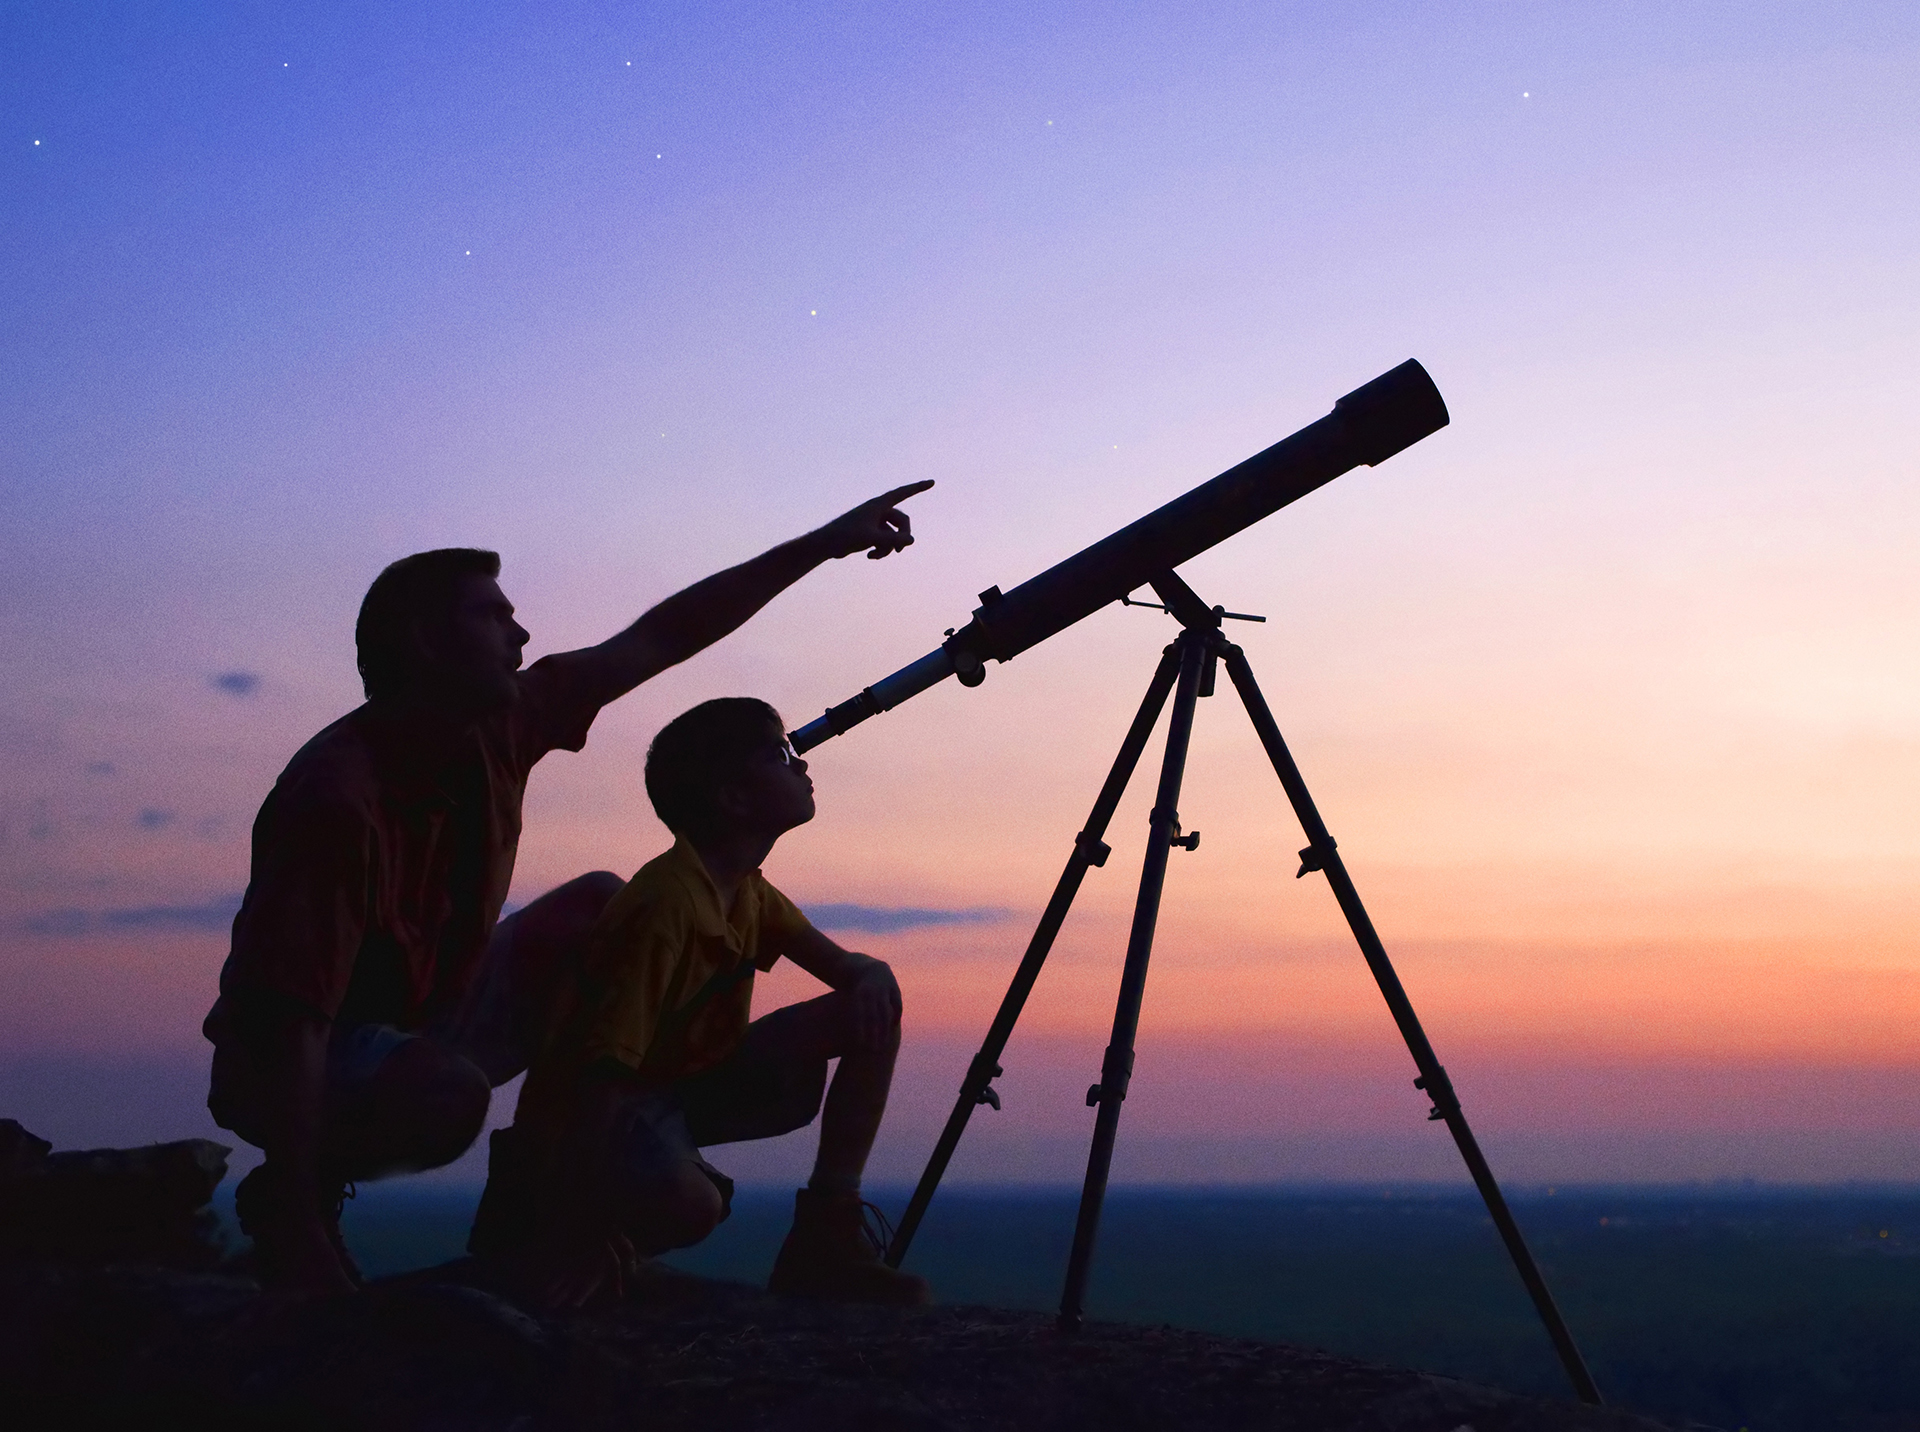 telescope for stargazing